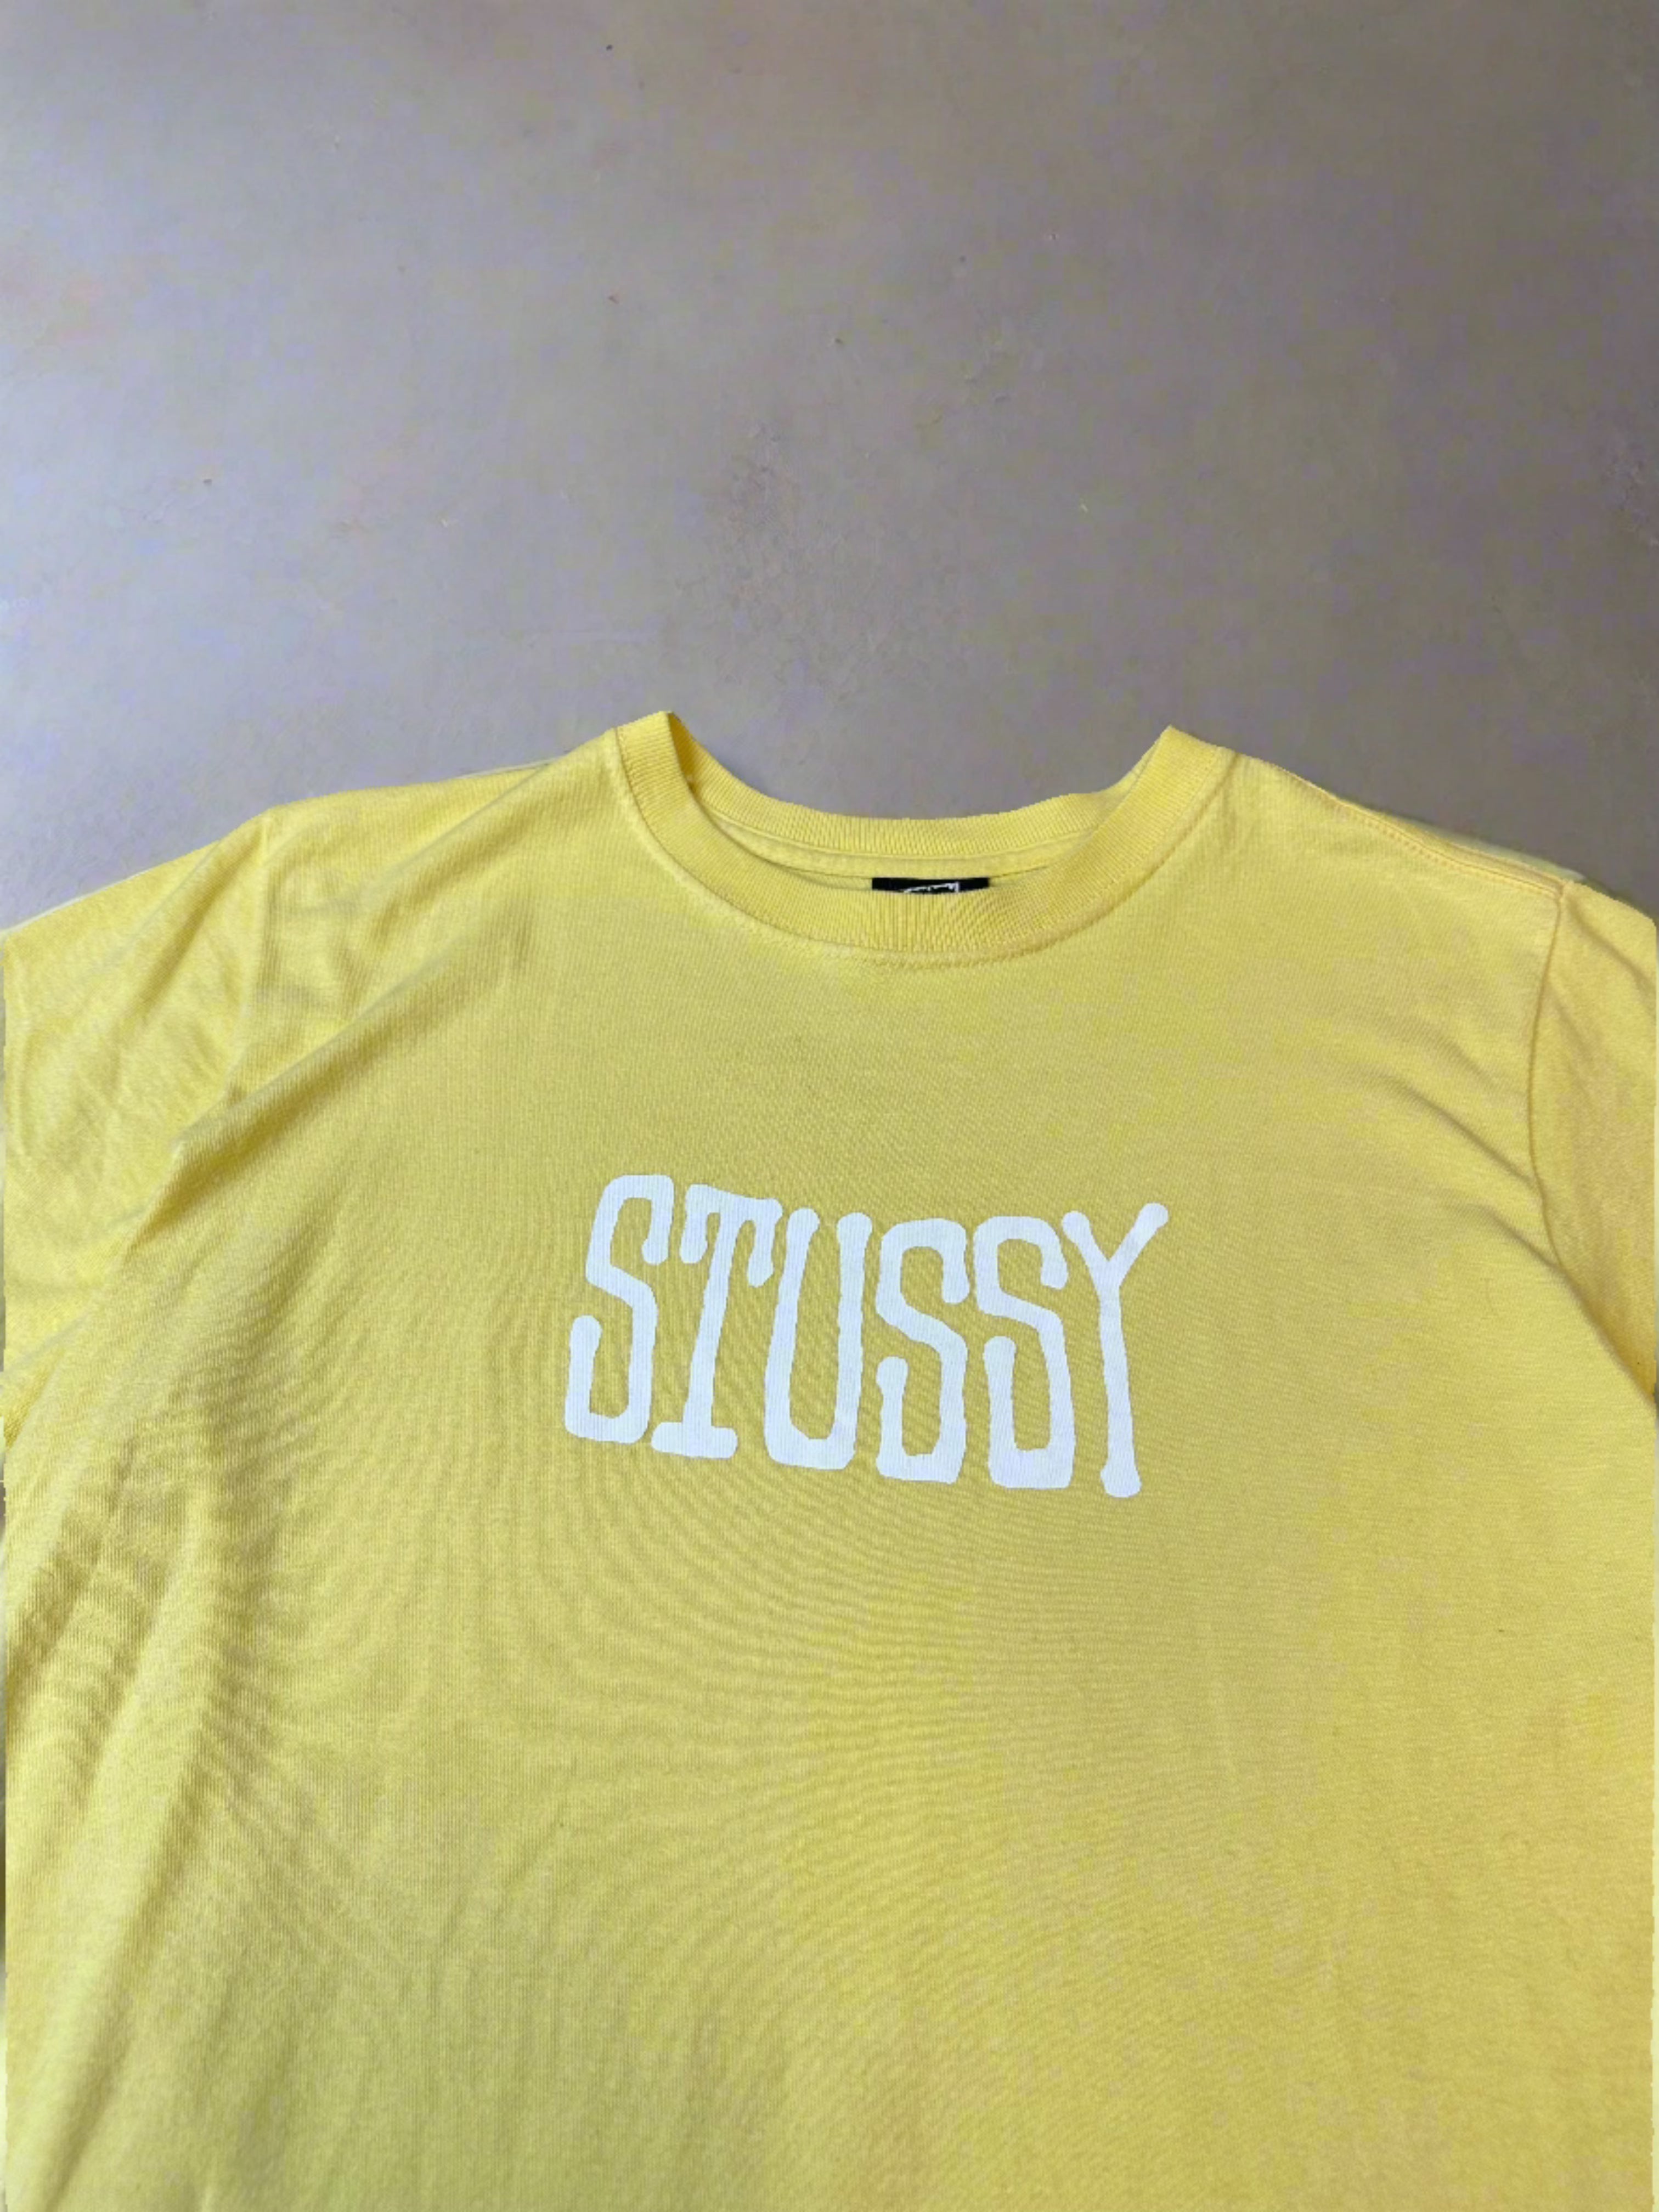 Vintage Stüssy Spellout T-shirt - size M